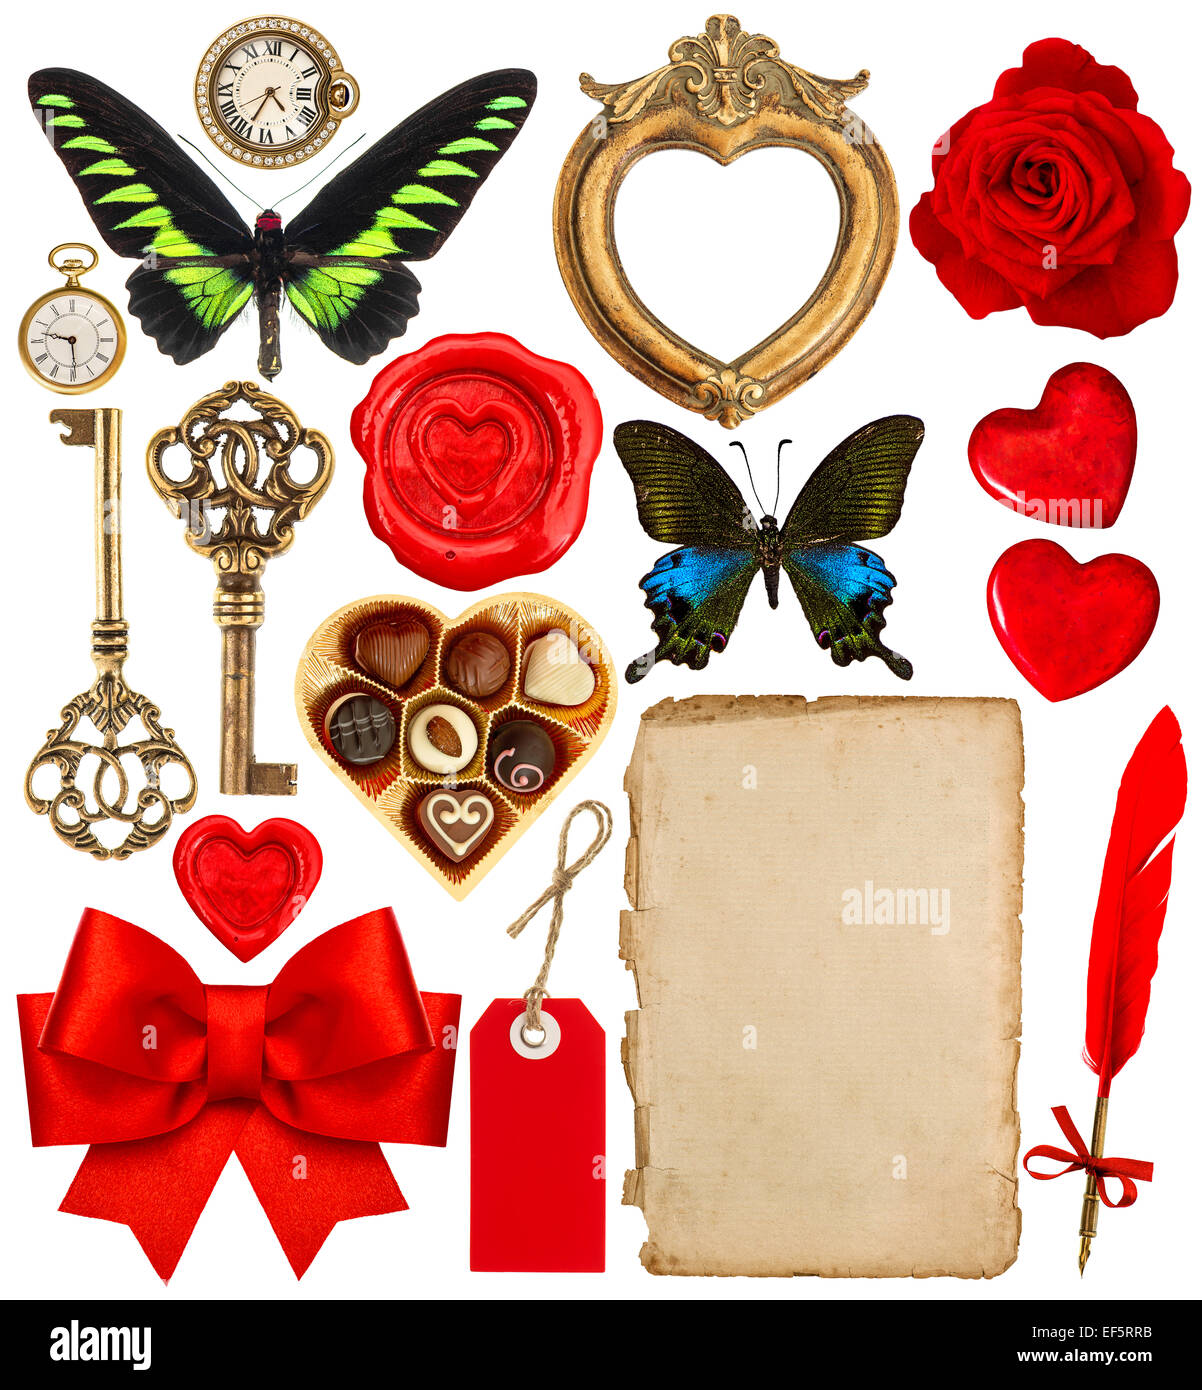 Colección de objetos diversos, para celebrar el Día de San Valentín scrapbook. Página de papel, Corazones rojos, el marco de fotos, reloj antiguo, clave, pluma pluma Foto de stock